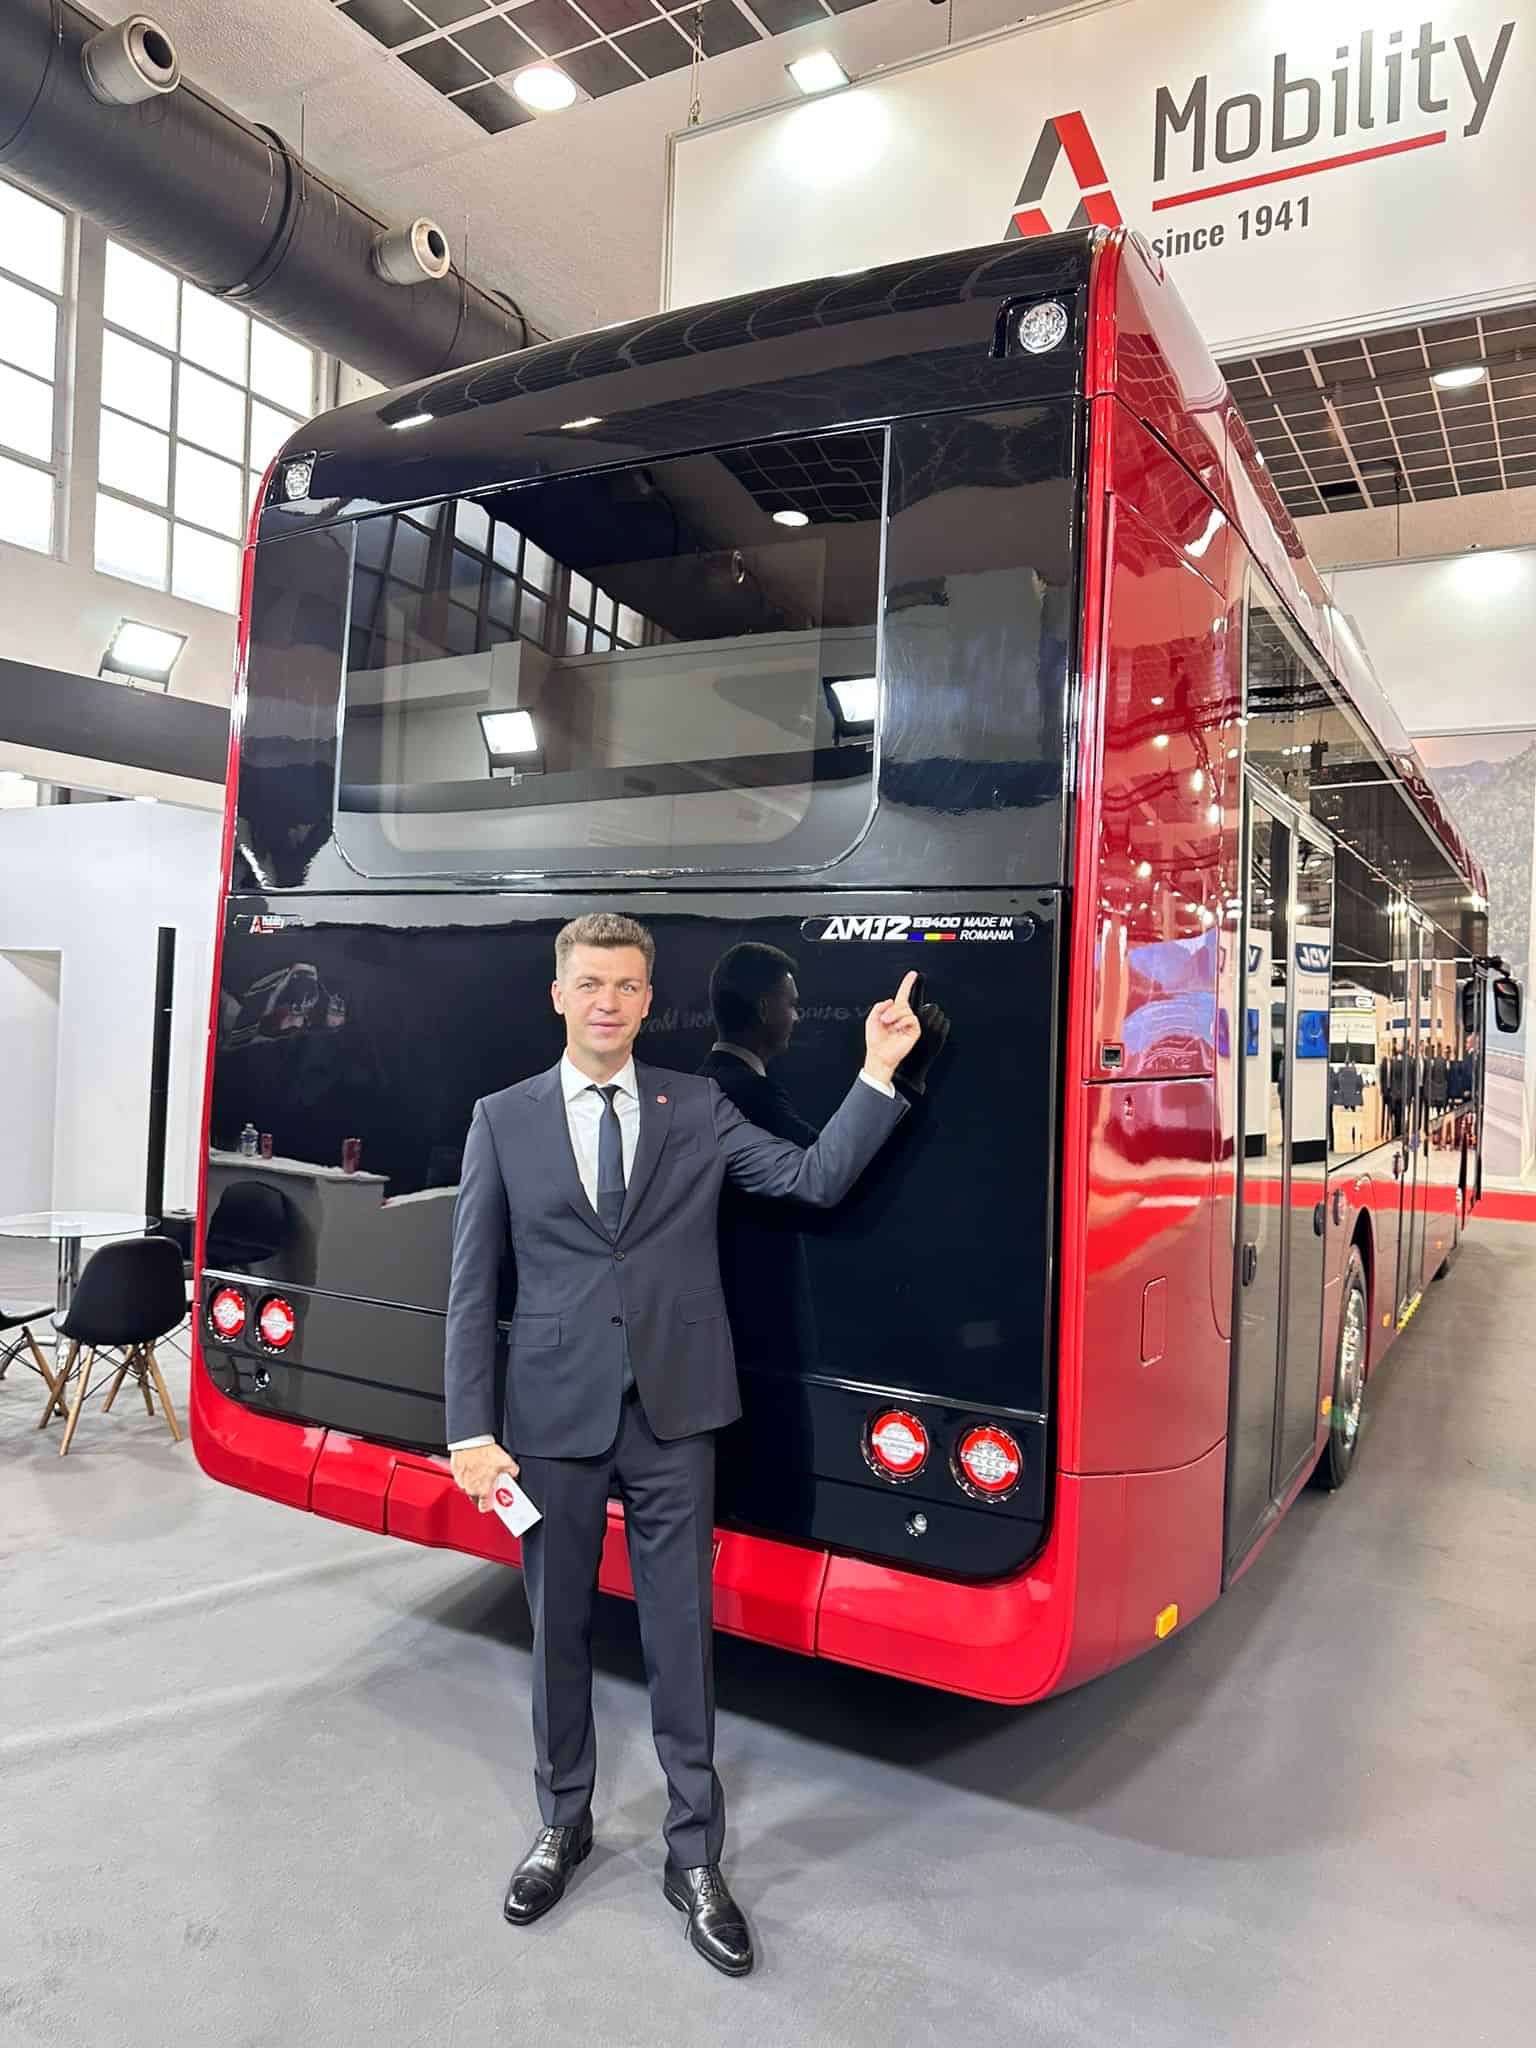 primul autobuz electric fabricat în românia: automecanica mediaș îl lansează la bruxelles